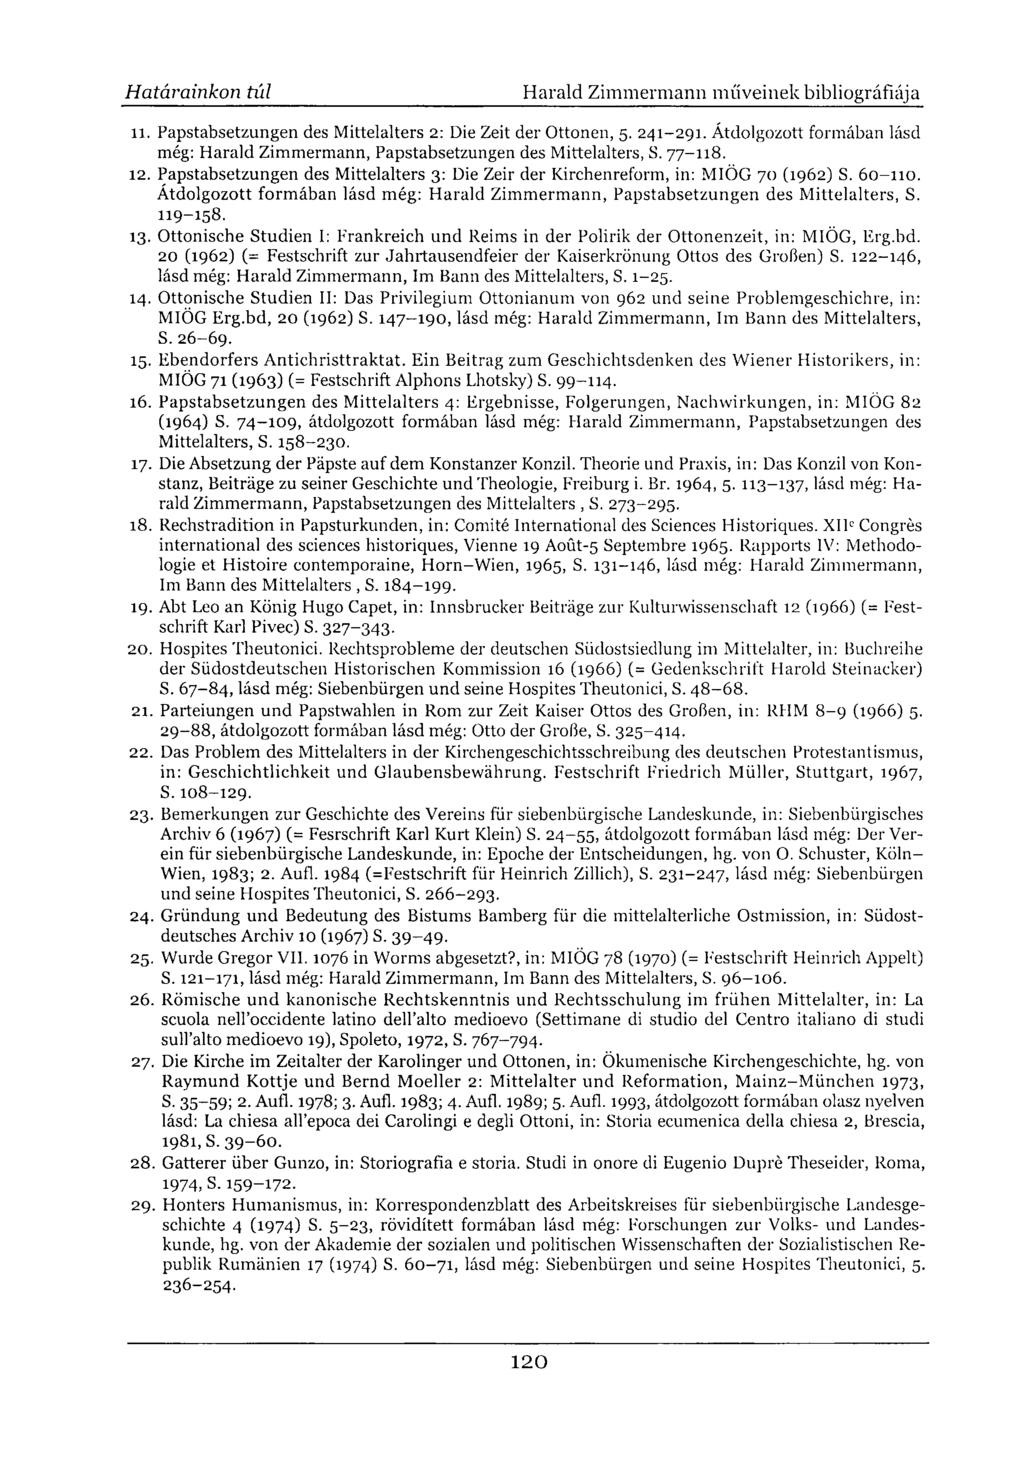 11. Papstabsetzungen des Mittelalters 2: Die Zeit der Ottonen, 5. 241-291. Átdolgozott formában lásd még: Harald Zimmermann, Papstabsetzungen des Mittelalters, S. 77-118. 12.